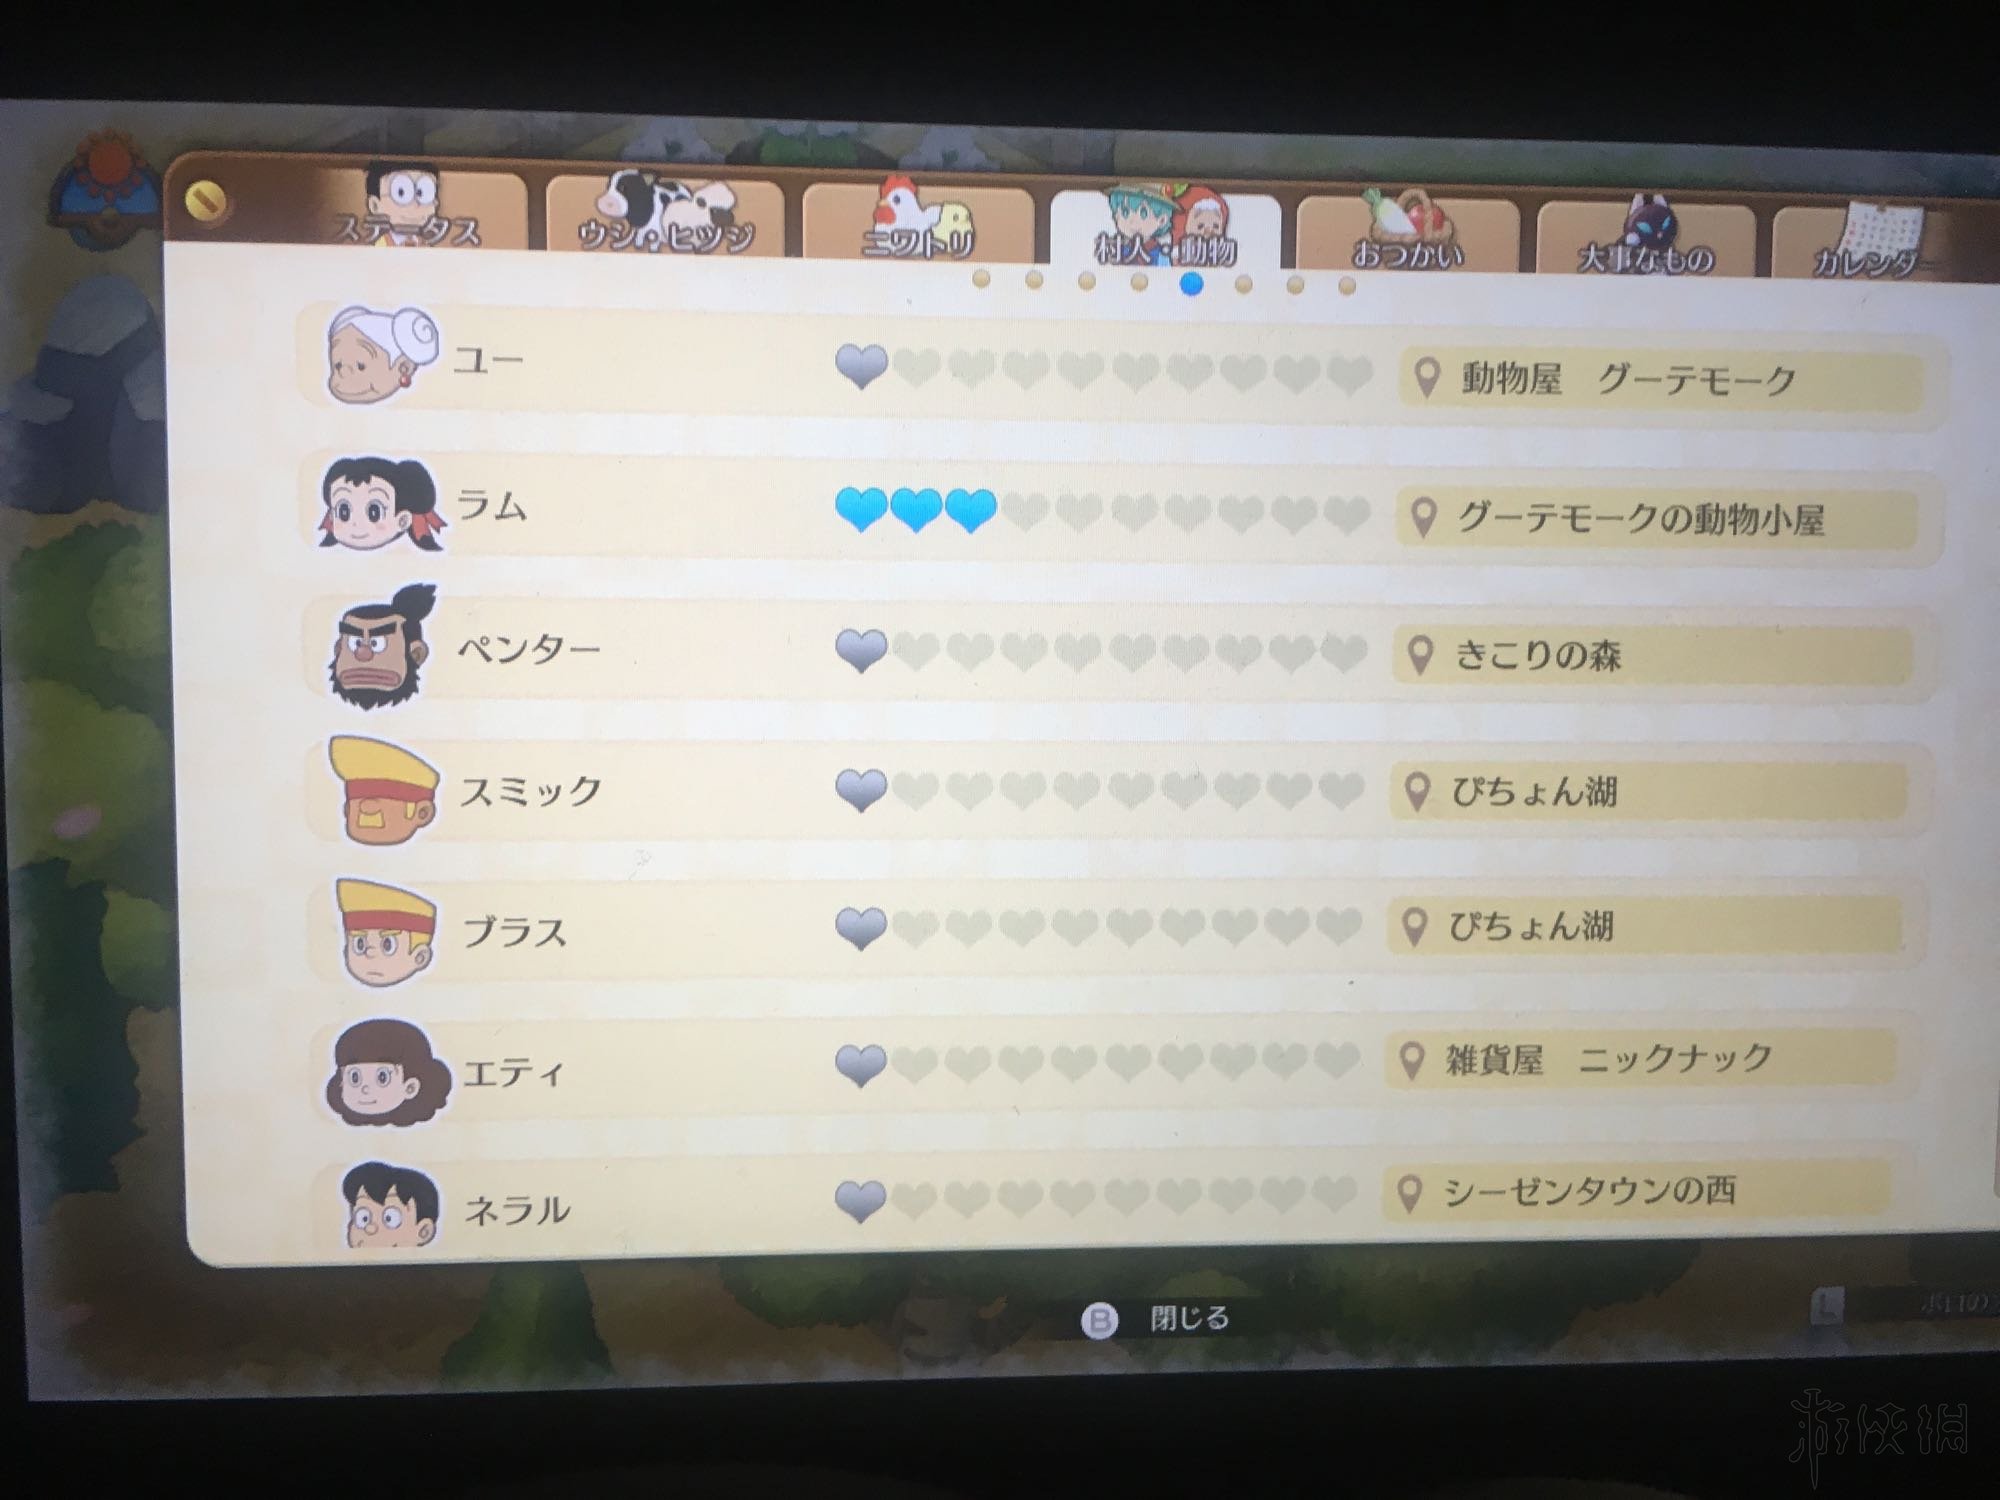 《哆啦A夢牧場物語》界面各項目作用一覽 玩法功能介紹